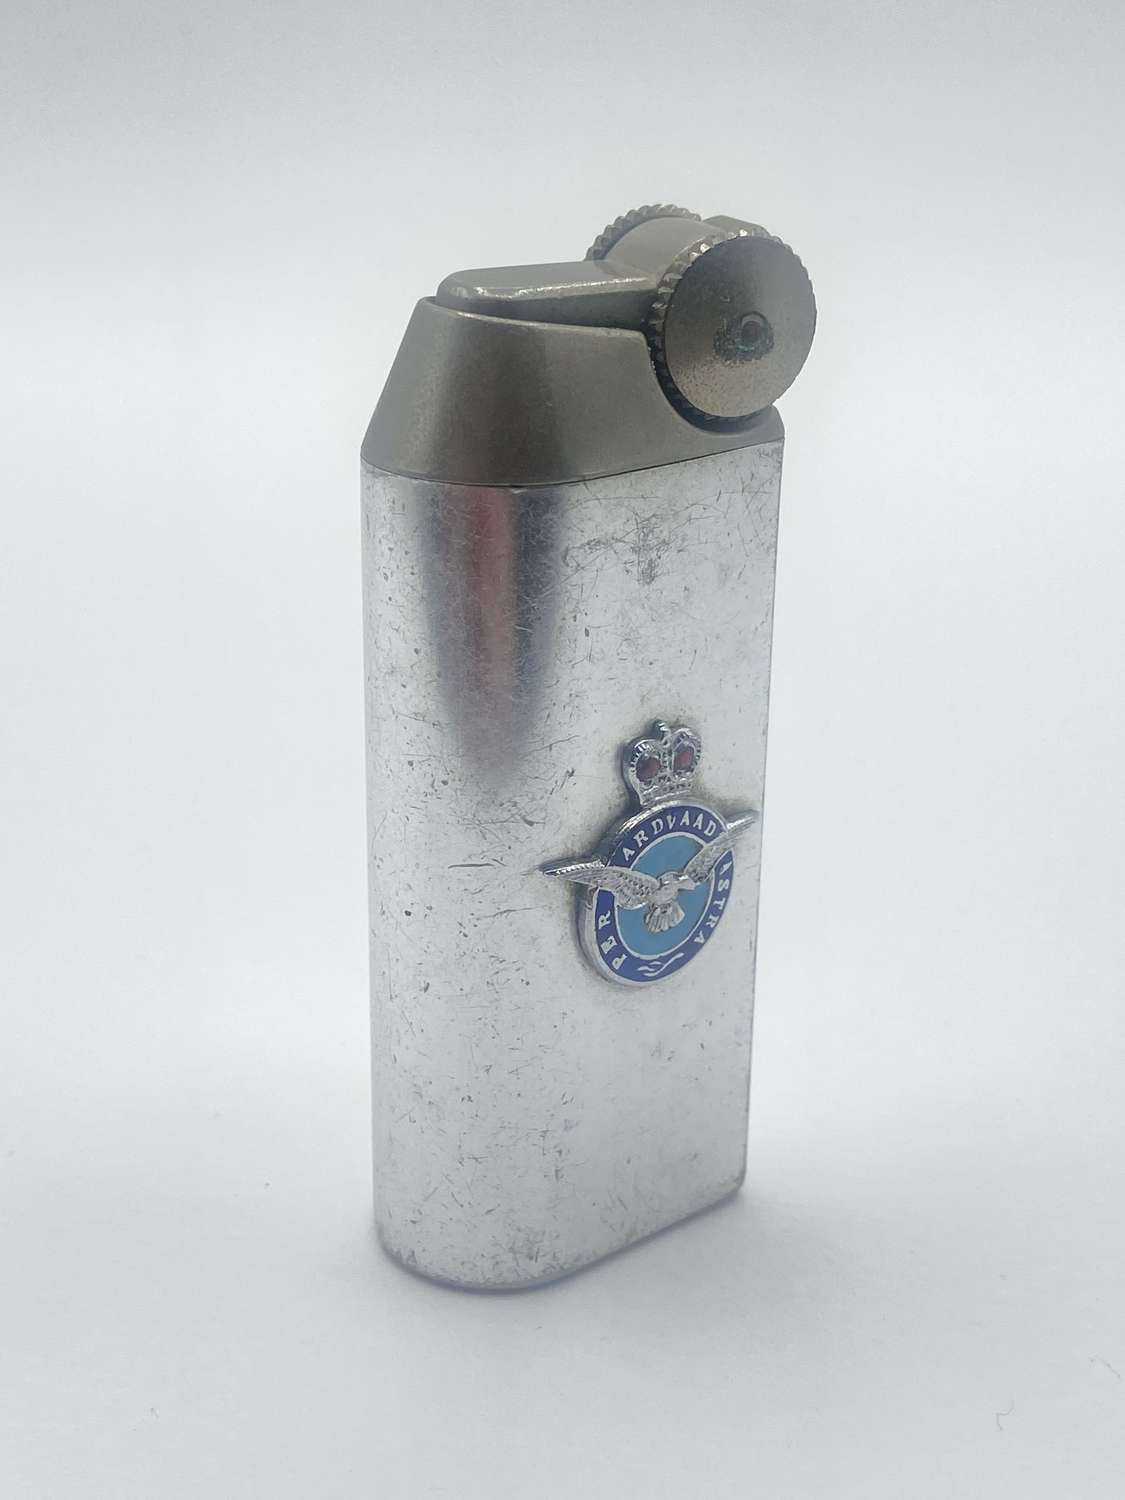 Post WW2 Royal Airforce RAF Emblem Curzon Branded Butane Lighter